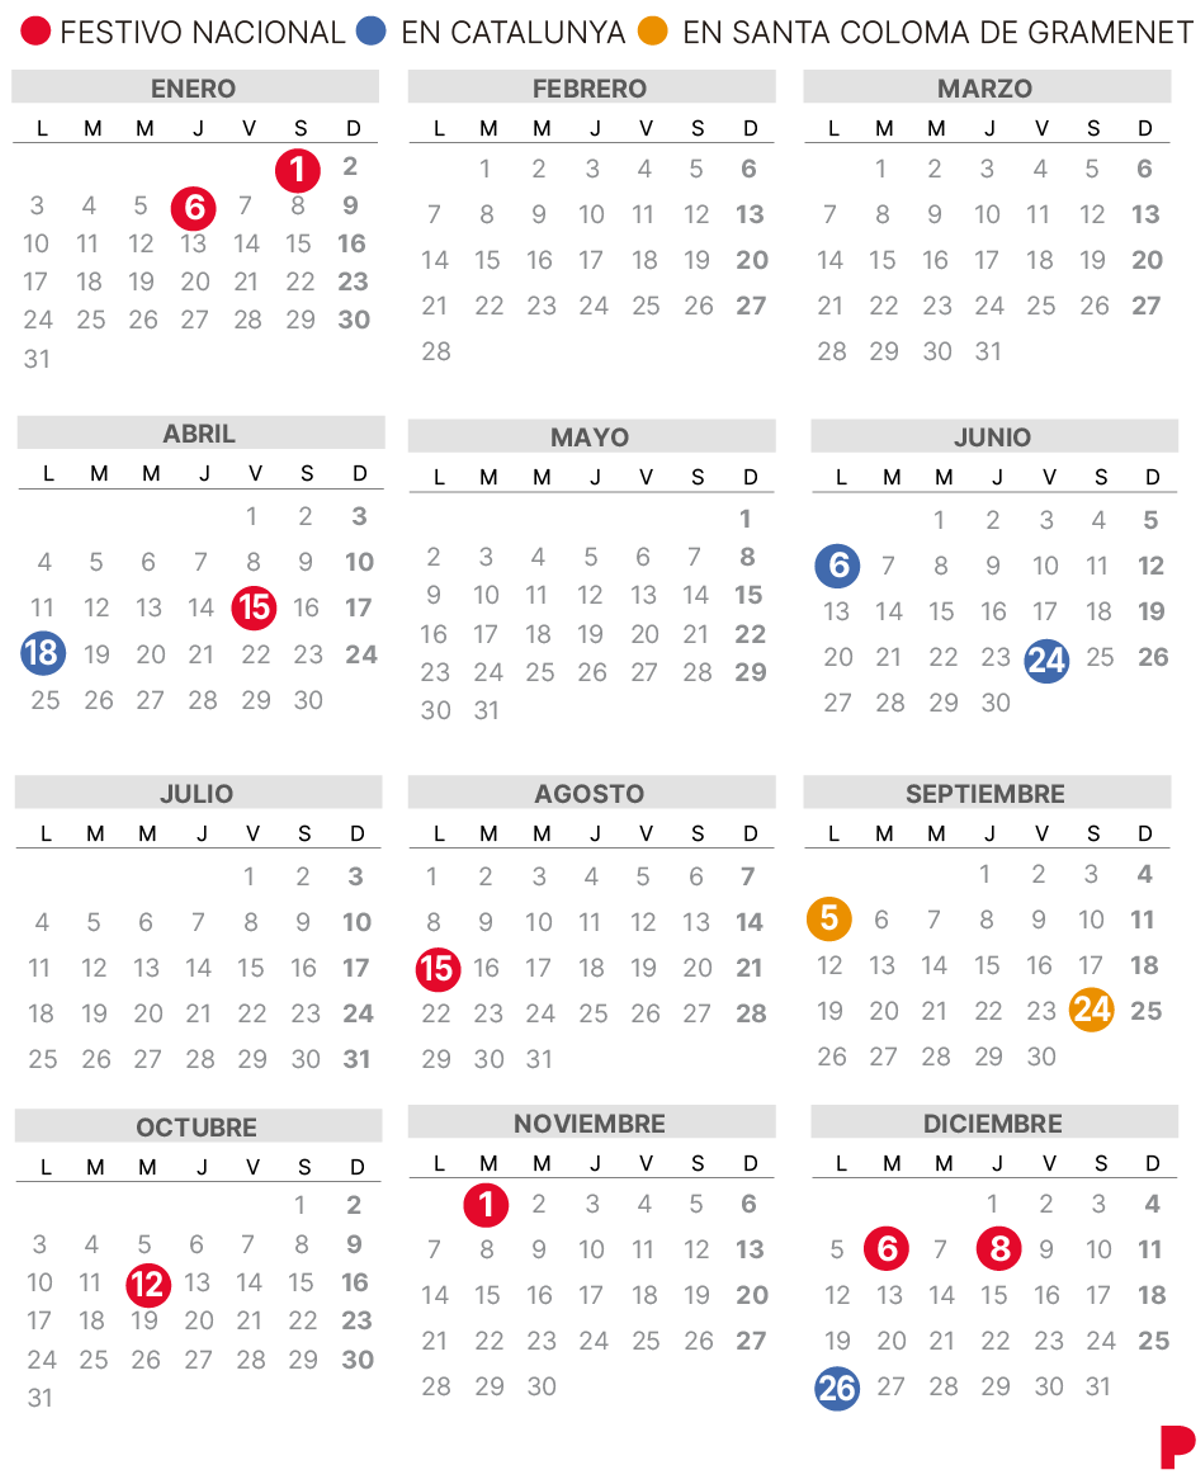 Calendario laboral Santa Coloma de Gramanet 2022.